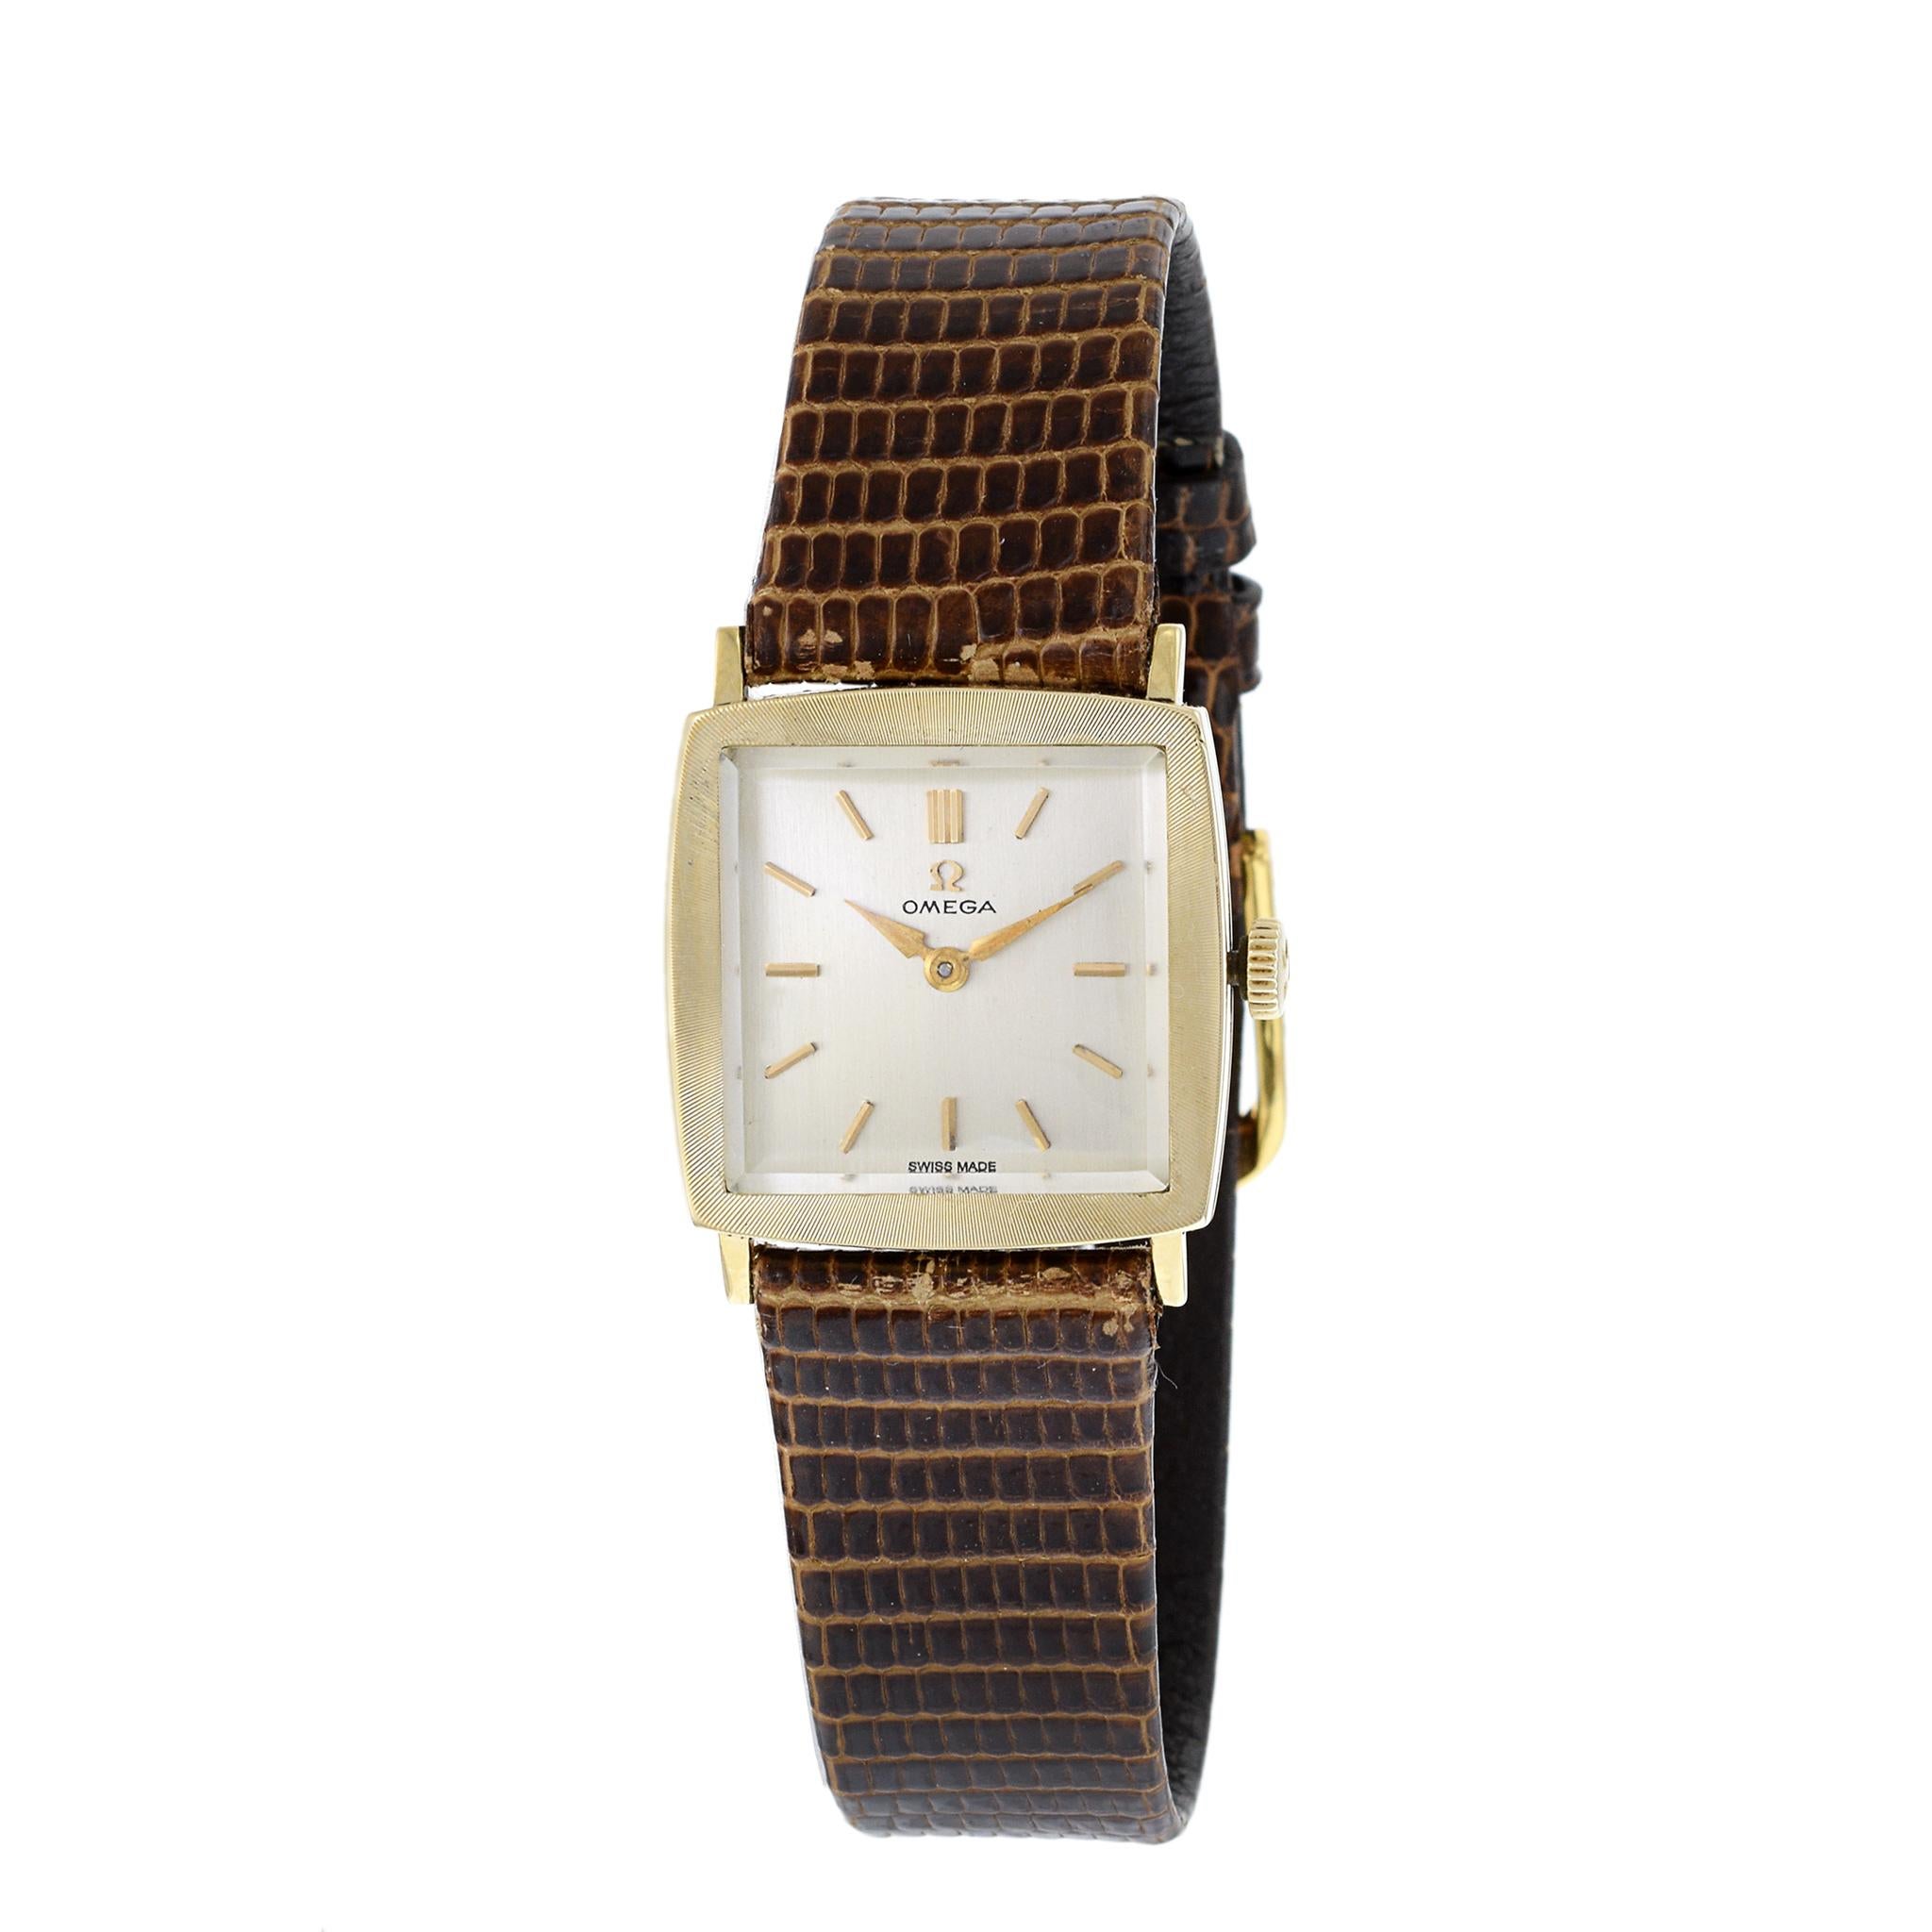 Dies ist ein Omega Tank Uhr in 14K Gelbgold. Diese Uhr ist eine Referenz 6696. Die Uhr wird von einem 17-steinigen Handaufzugswerk Kaliber 620 angetrieben. Diese Uhr hat ein silbernes Zifferblatt mit Stabindexen und die originale Krone. Sie ist auf